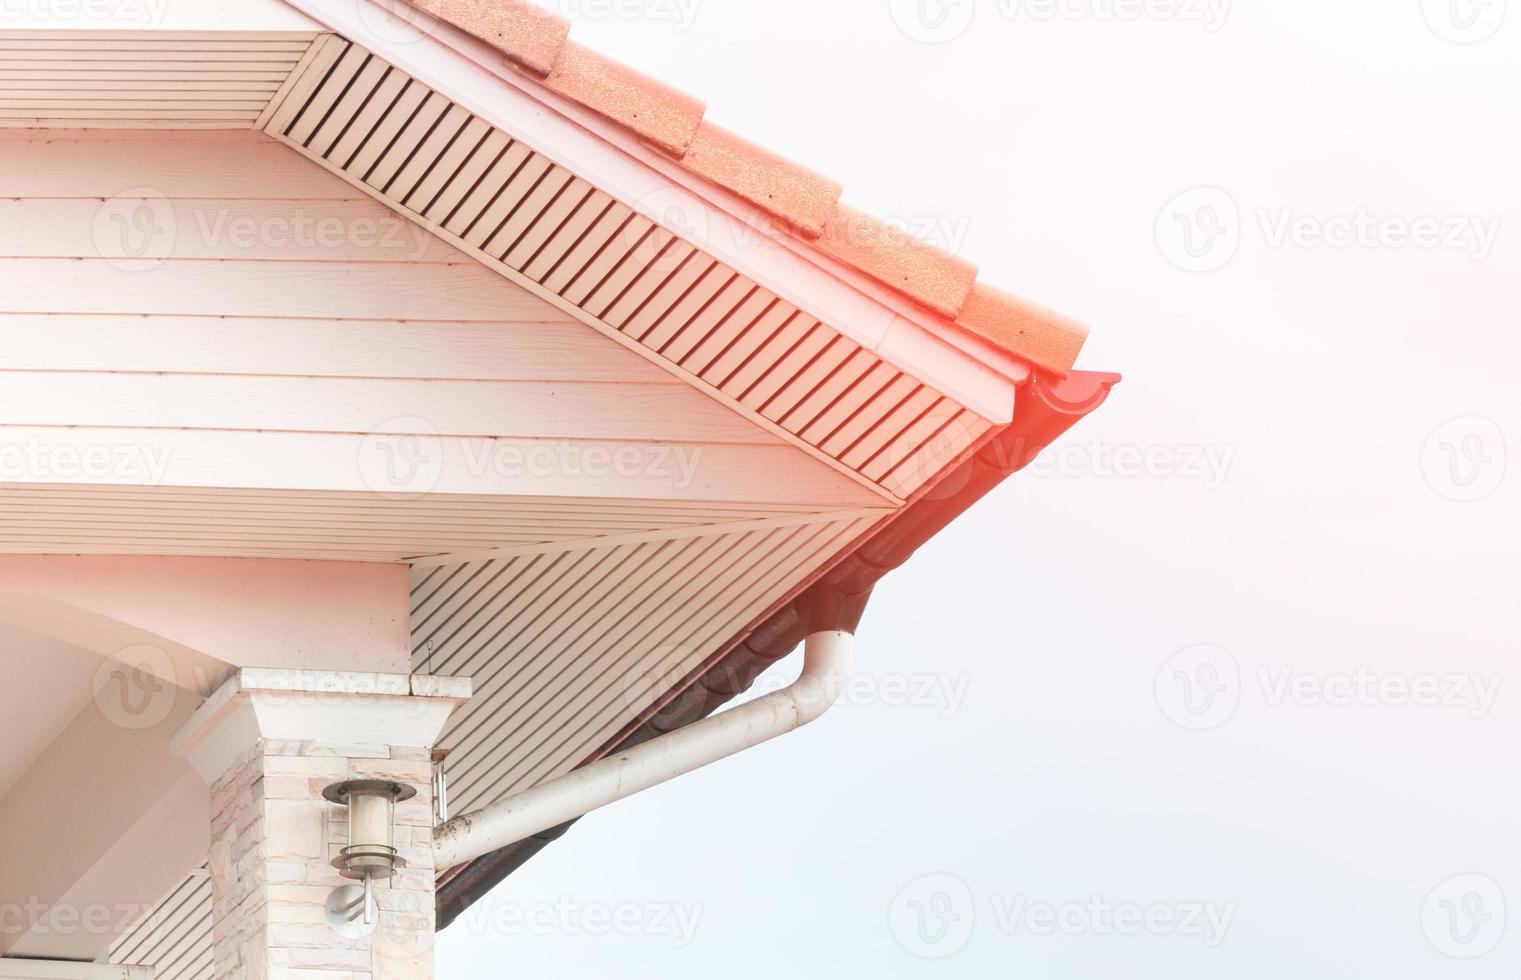 verweerd dak met regen goot van dak top van huis foto